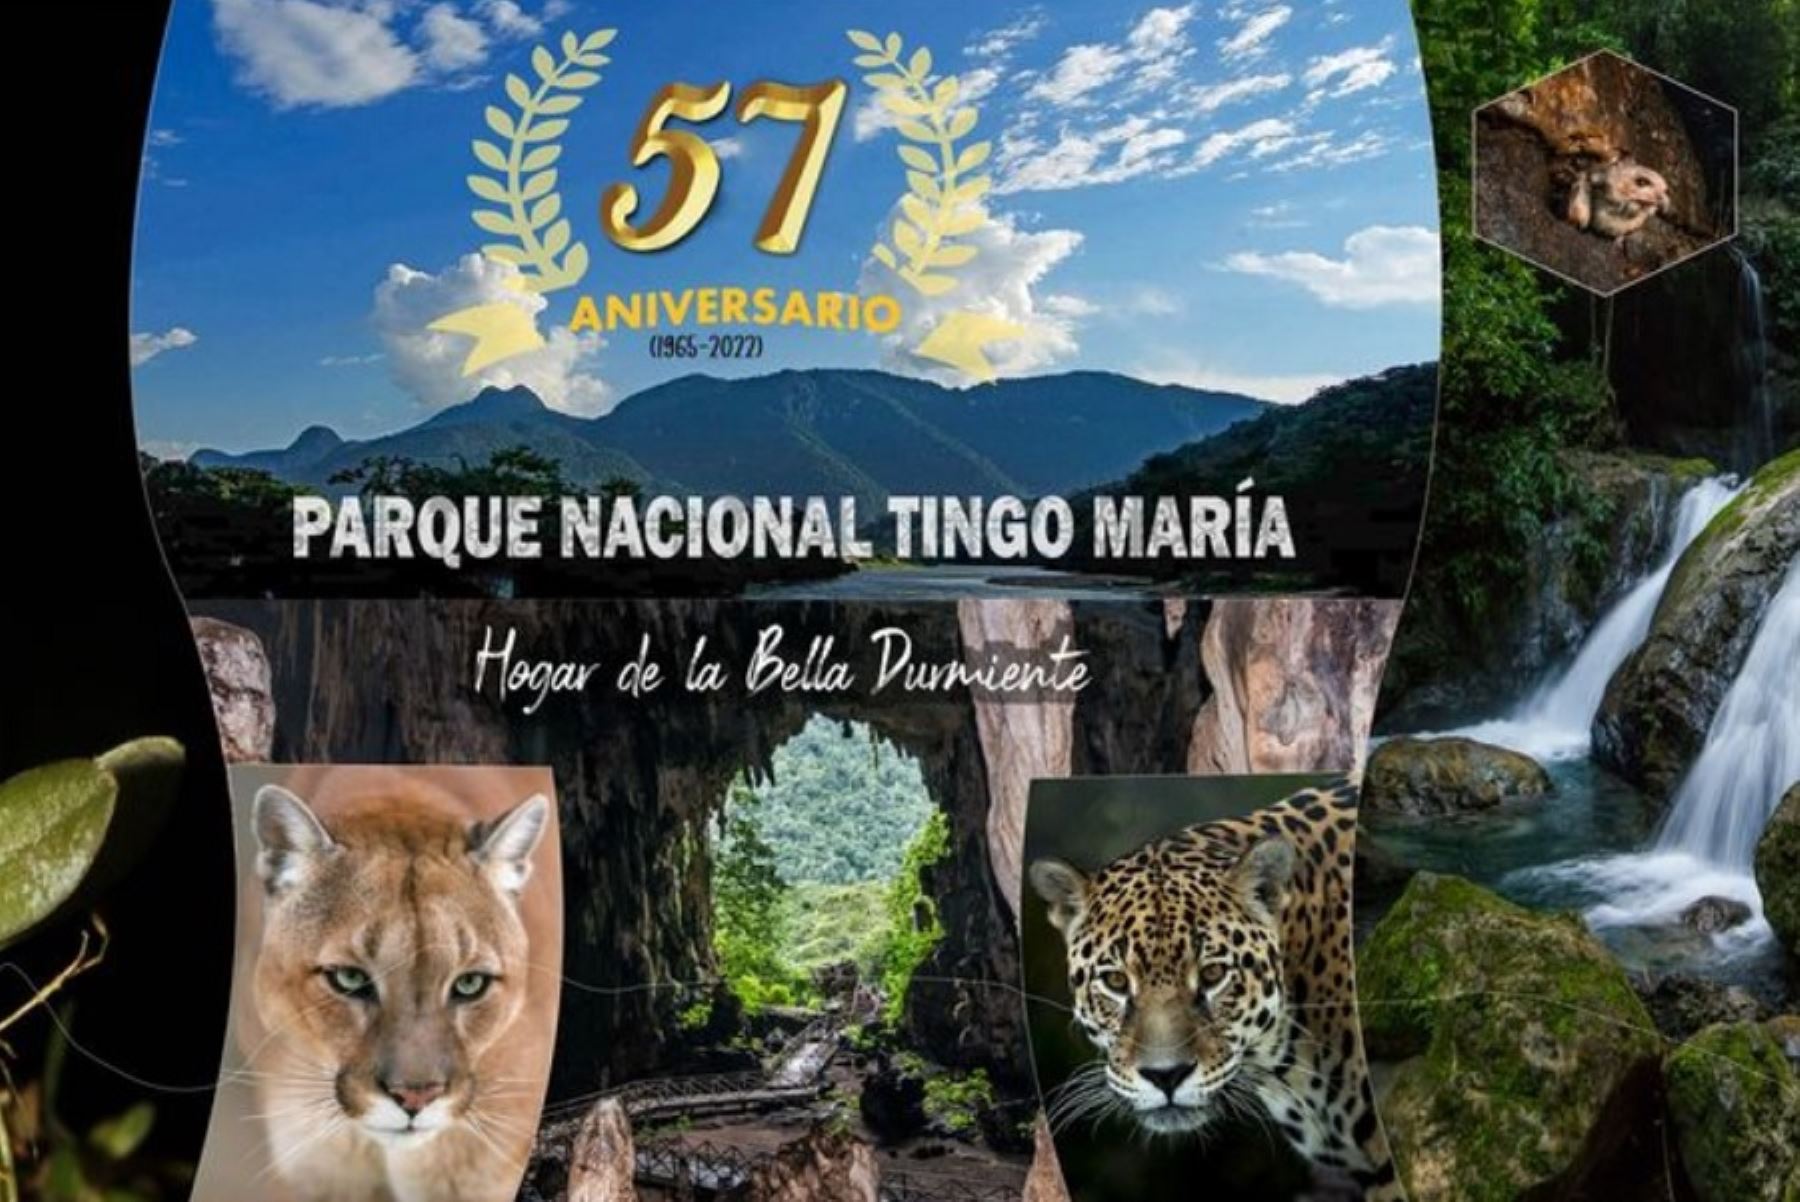 Parque Nacional Tingo María: “Bella durmiente” celebra su 57 efeméride como área protegida